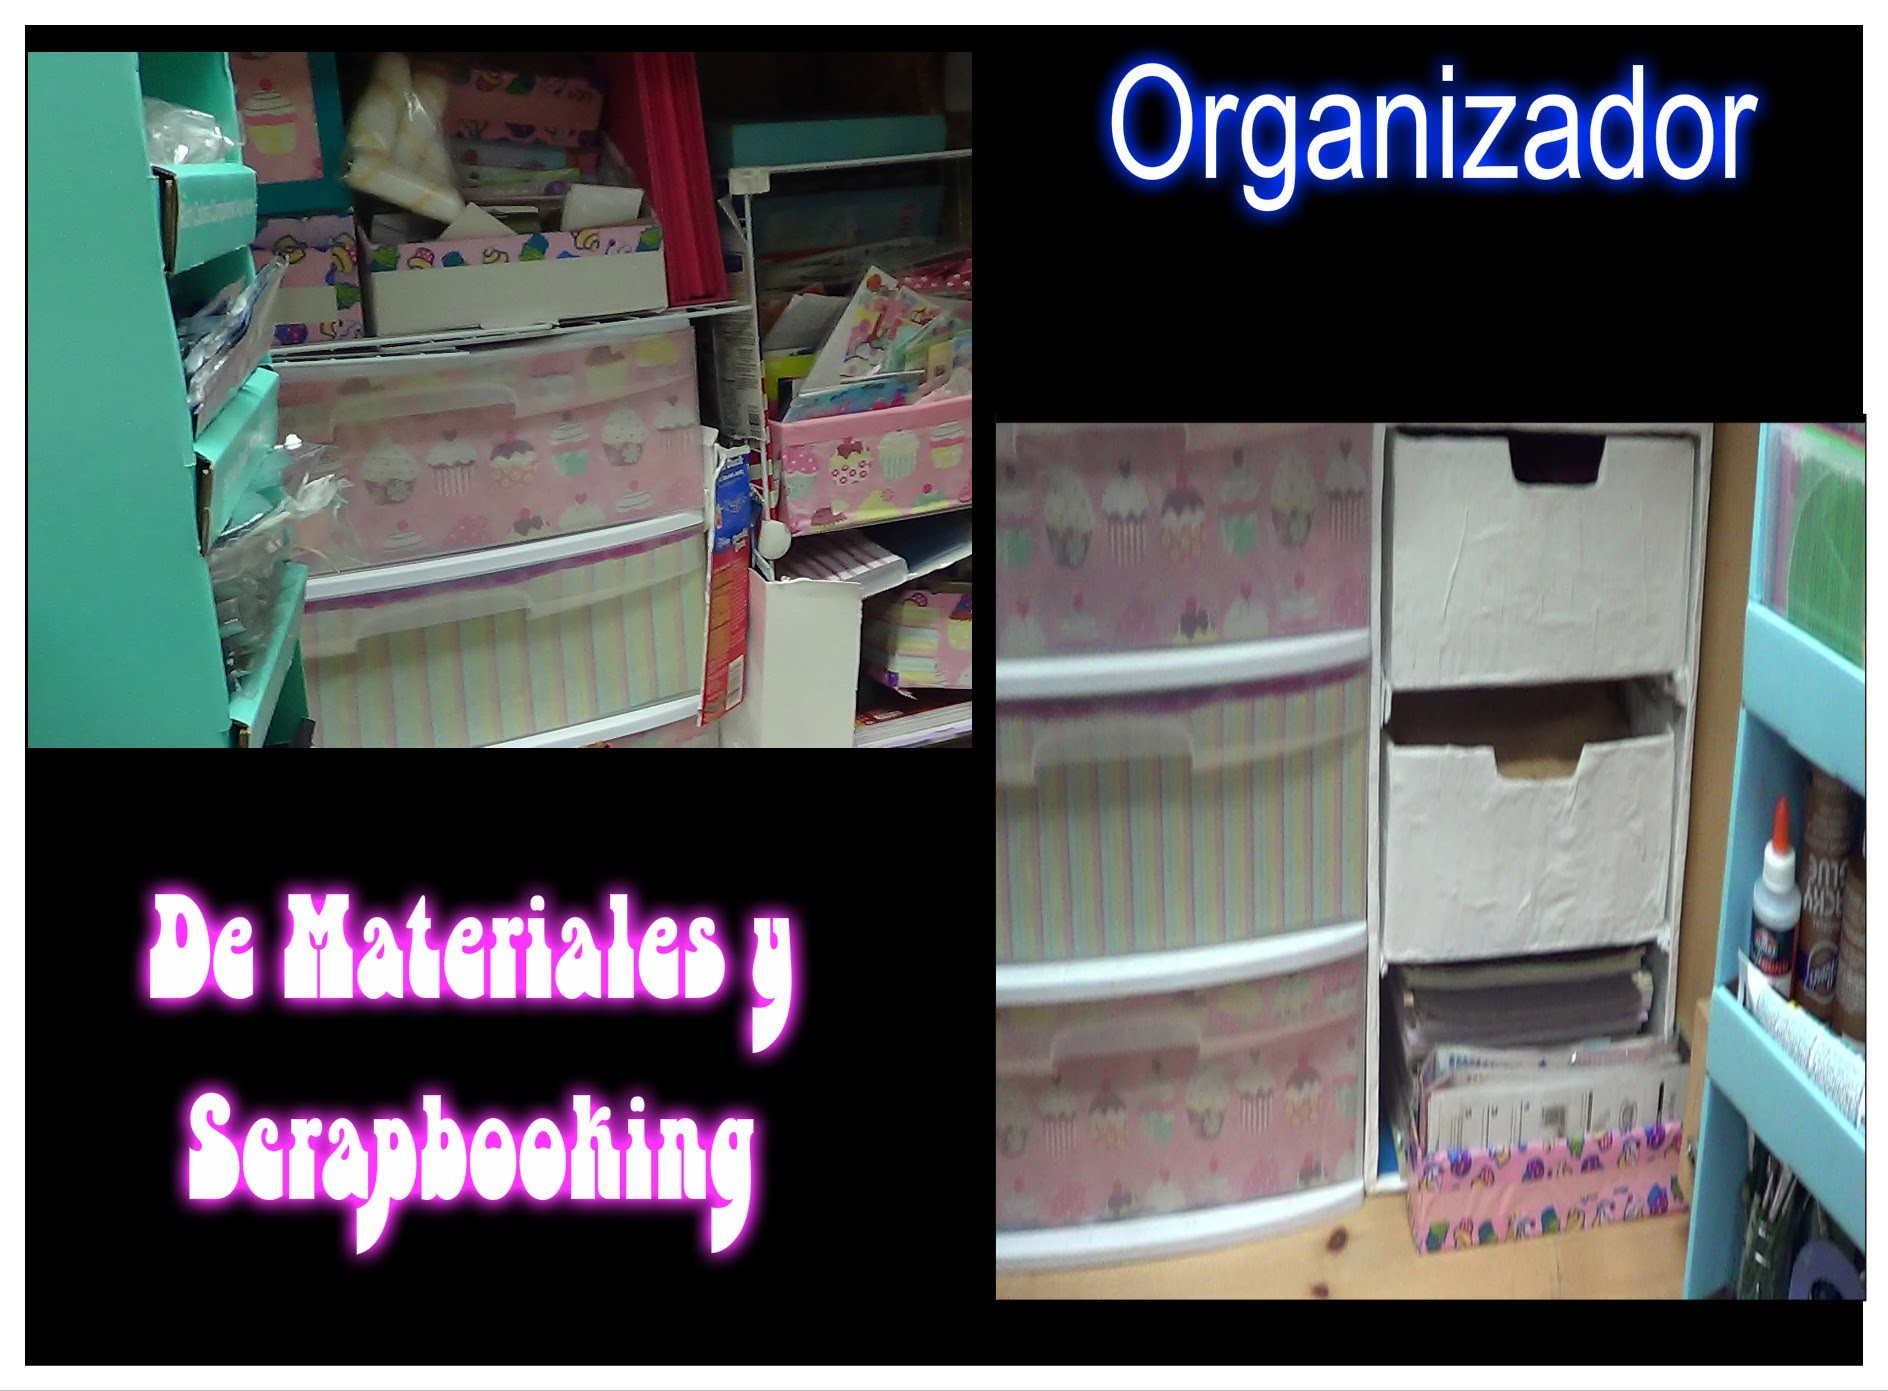 Organizador de materiales y Scrapbooking